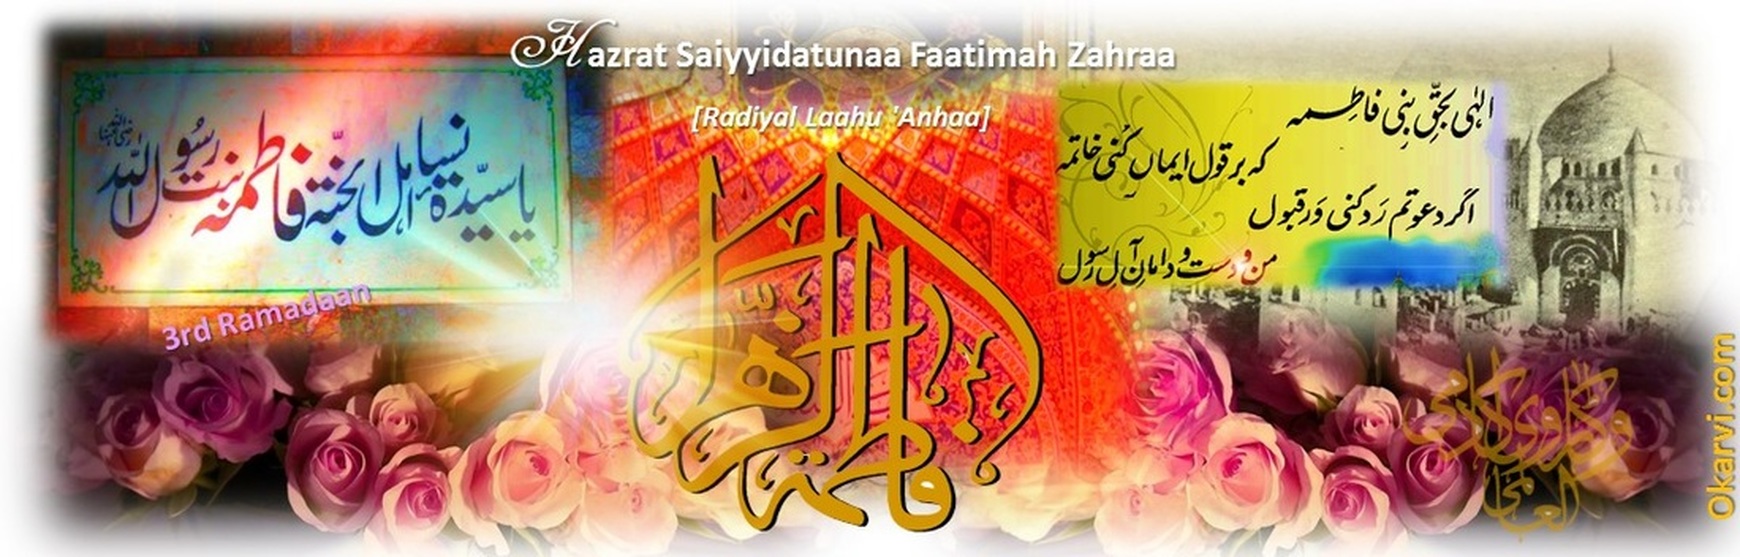 3rd Ramadaan : Hazrat Saiyyidatunaa Faatimah Zahraa [Radiyal Laahu 'Anhaa]